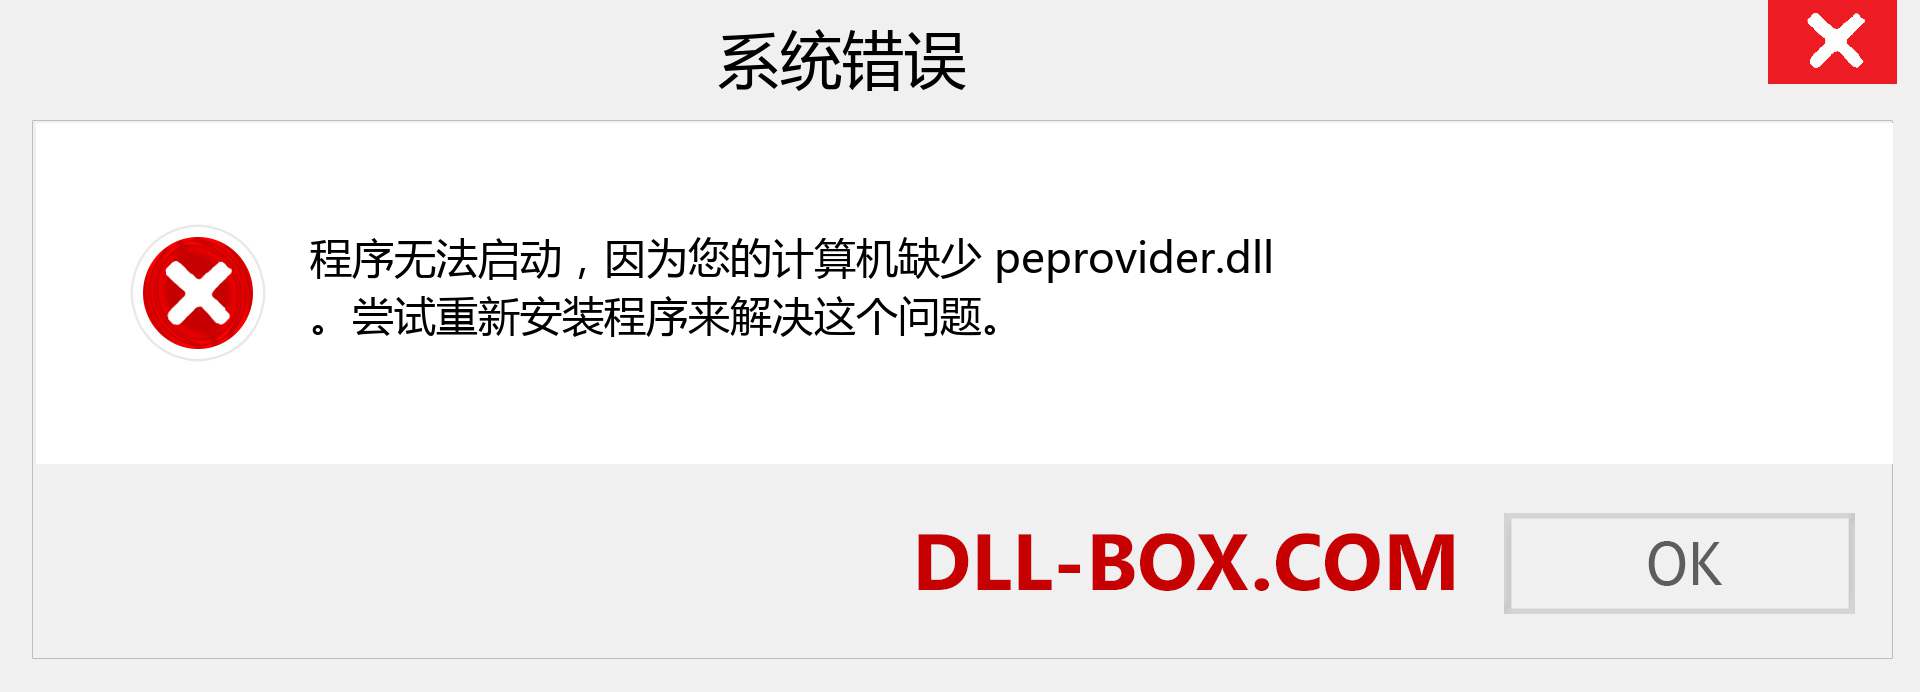 peprovider.dll 文件丢失？。 适用于 Windows 7、8、10 的下载 - 修复 Windows、照片、图像上的 peprovider dll 丢失错误